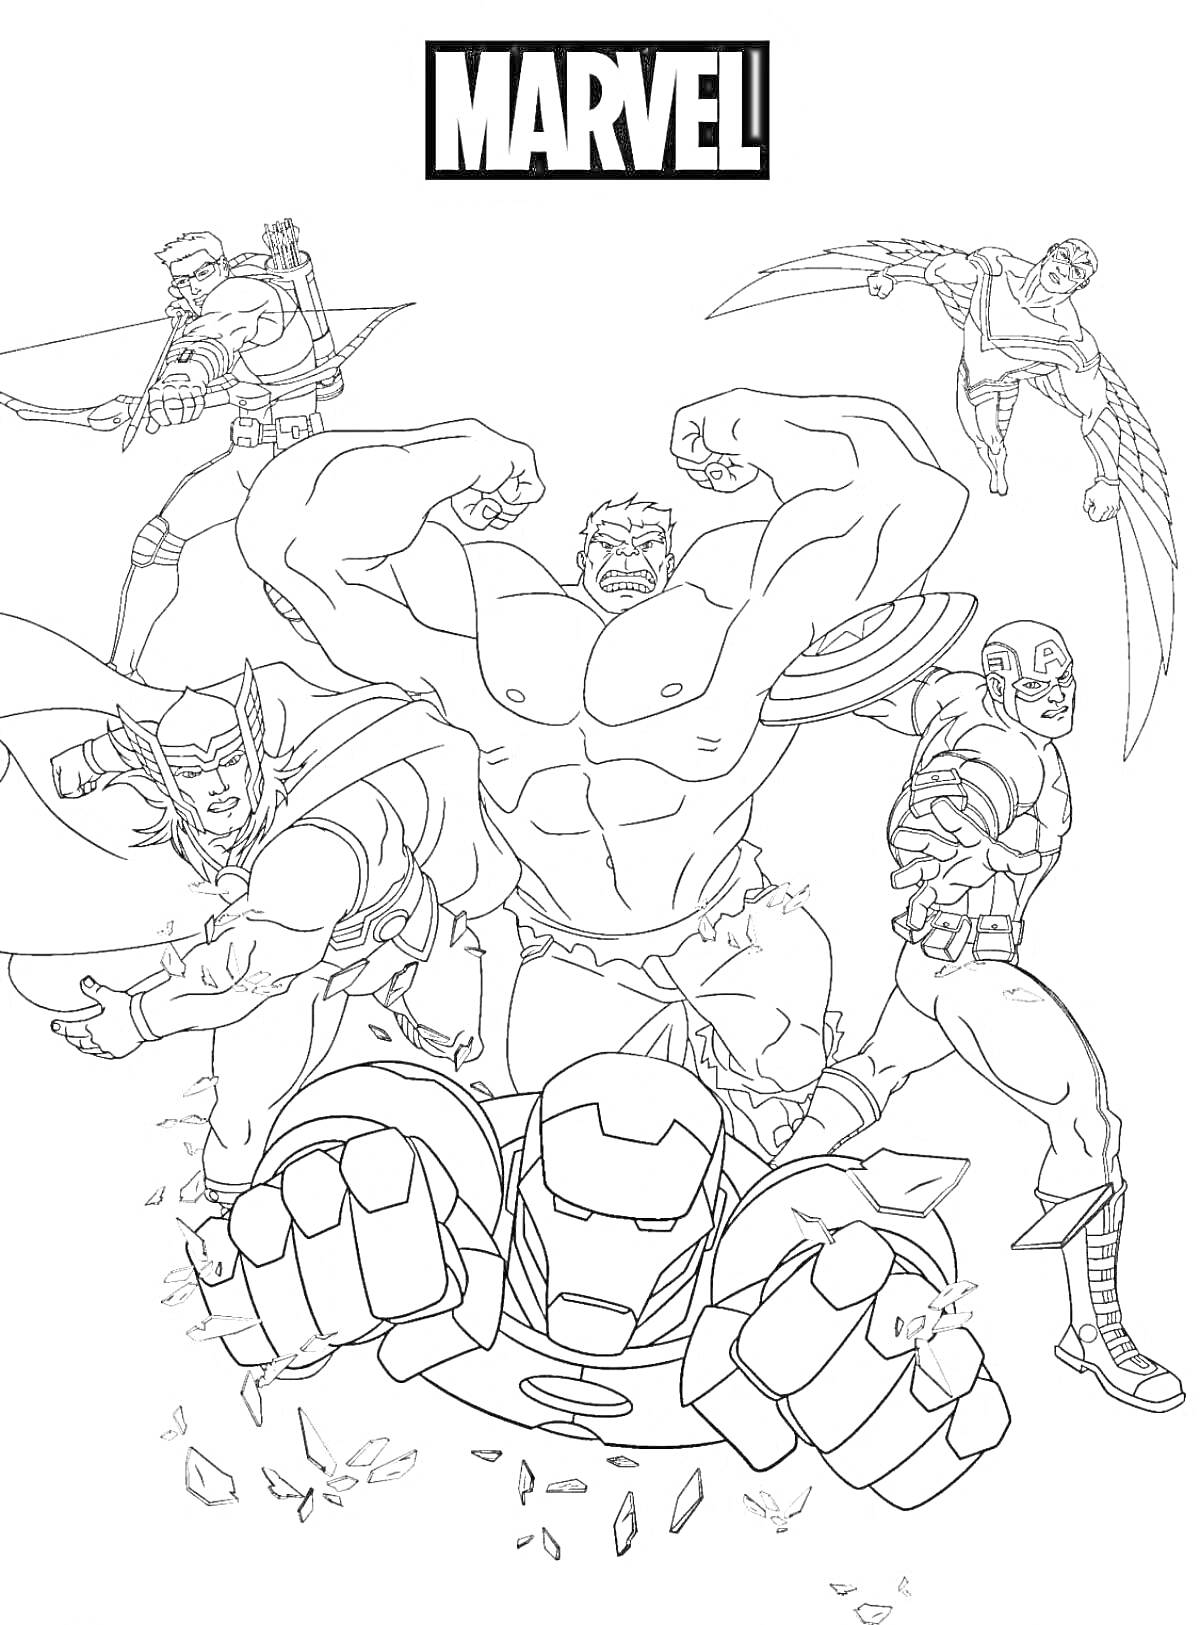 Раскраска Черно-белая раскраска с персонажами Marvel: лучшие герои, входящие в команду Мстителей